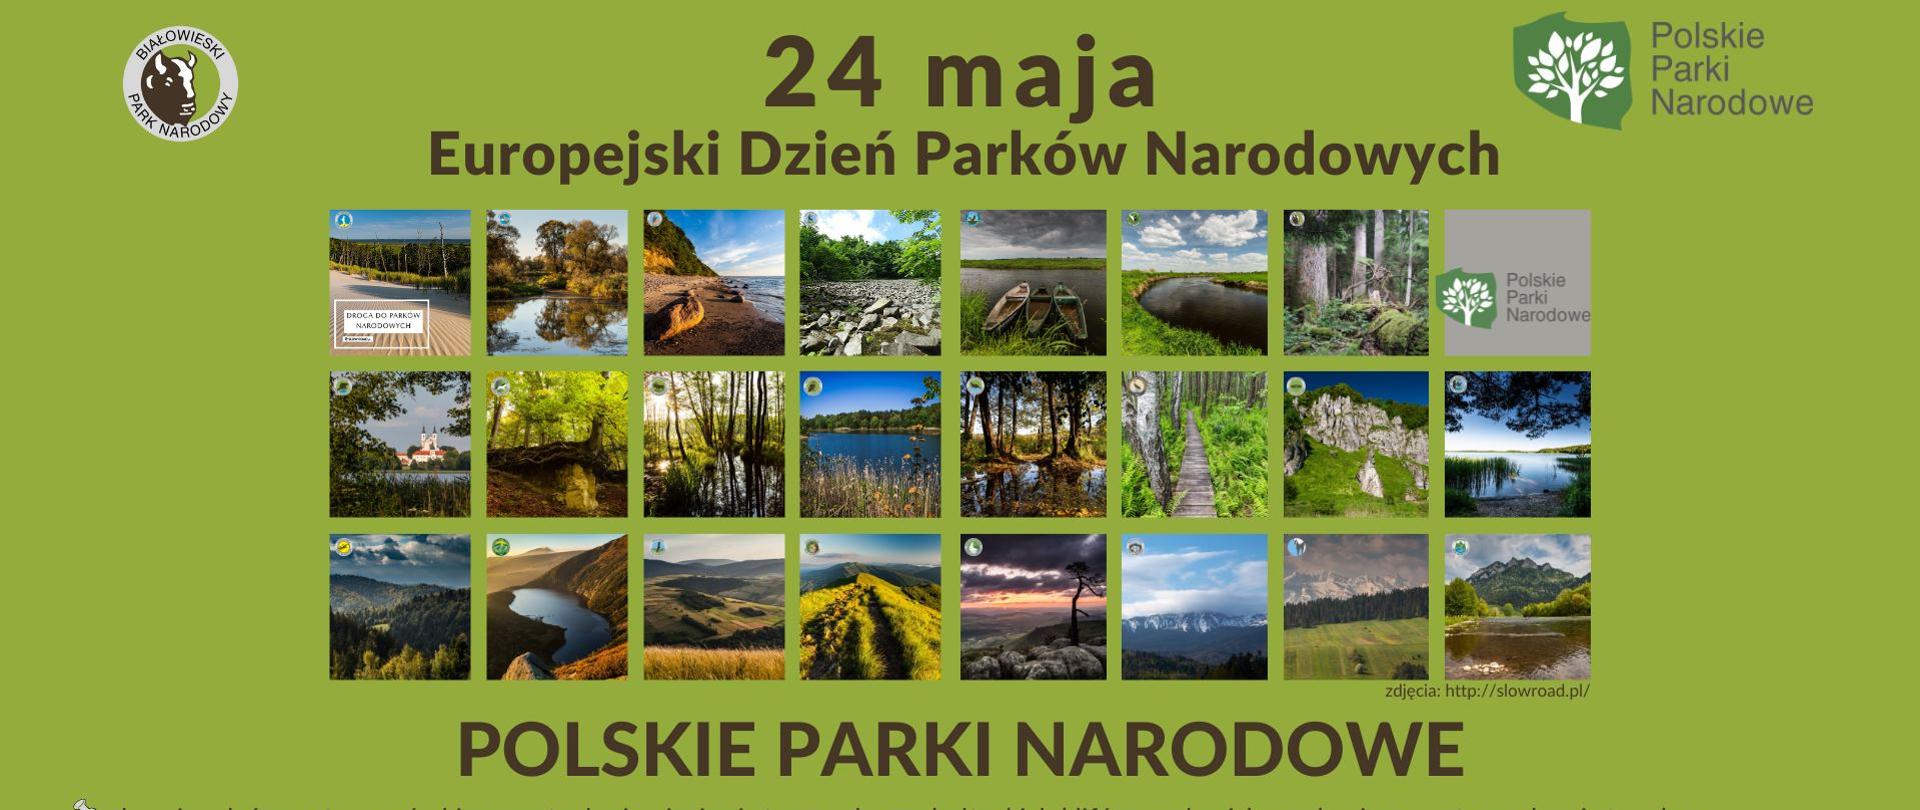 Na zielonym tle miniatury 24 kwadratowych zdjęć, przedstawiających krajobraz z polskich parków narodowych. U góry i dołu napisy: 24 maja Europejski Dzień Parków Narodowych, Polskie Parki Narodowe - chronimy leśne ostępy, górskie szczyty, krainę jezior i strome zbocza bałtyckich klifów, rozlewiska rzek, piaszczyste wydmy i stare lasy; jest nas 23 i mimo, że chronimy najpiękniejsze najbardziej wartościowe obszary przyrodnicze, zajmujemy tylko 1% powierzchni kraju; zapraszamy na spotkanie z parkowcami - ludźmi, którzy na co dzień opiekują się przyrodą w parkach: 24 maja 2024, godz. 18.00 do dyrekcji Białowieskiego Parku Narodowego